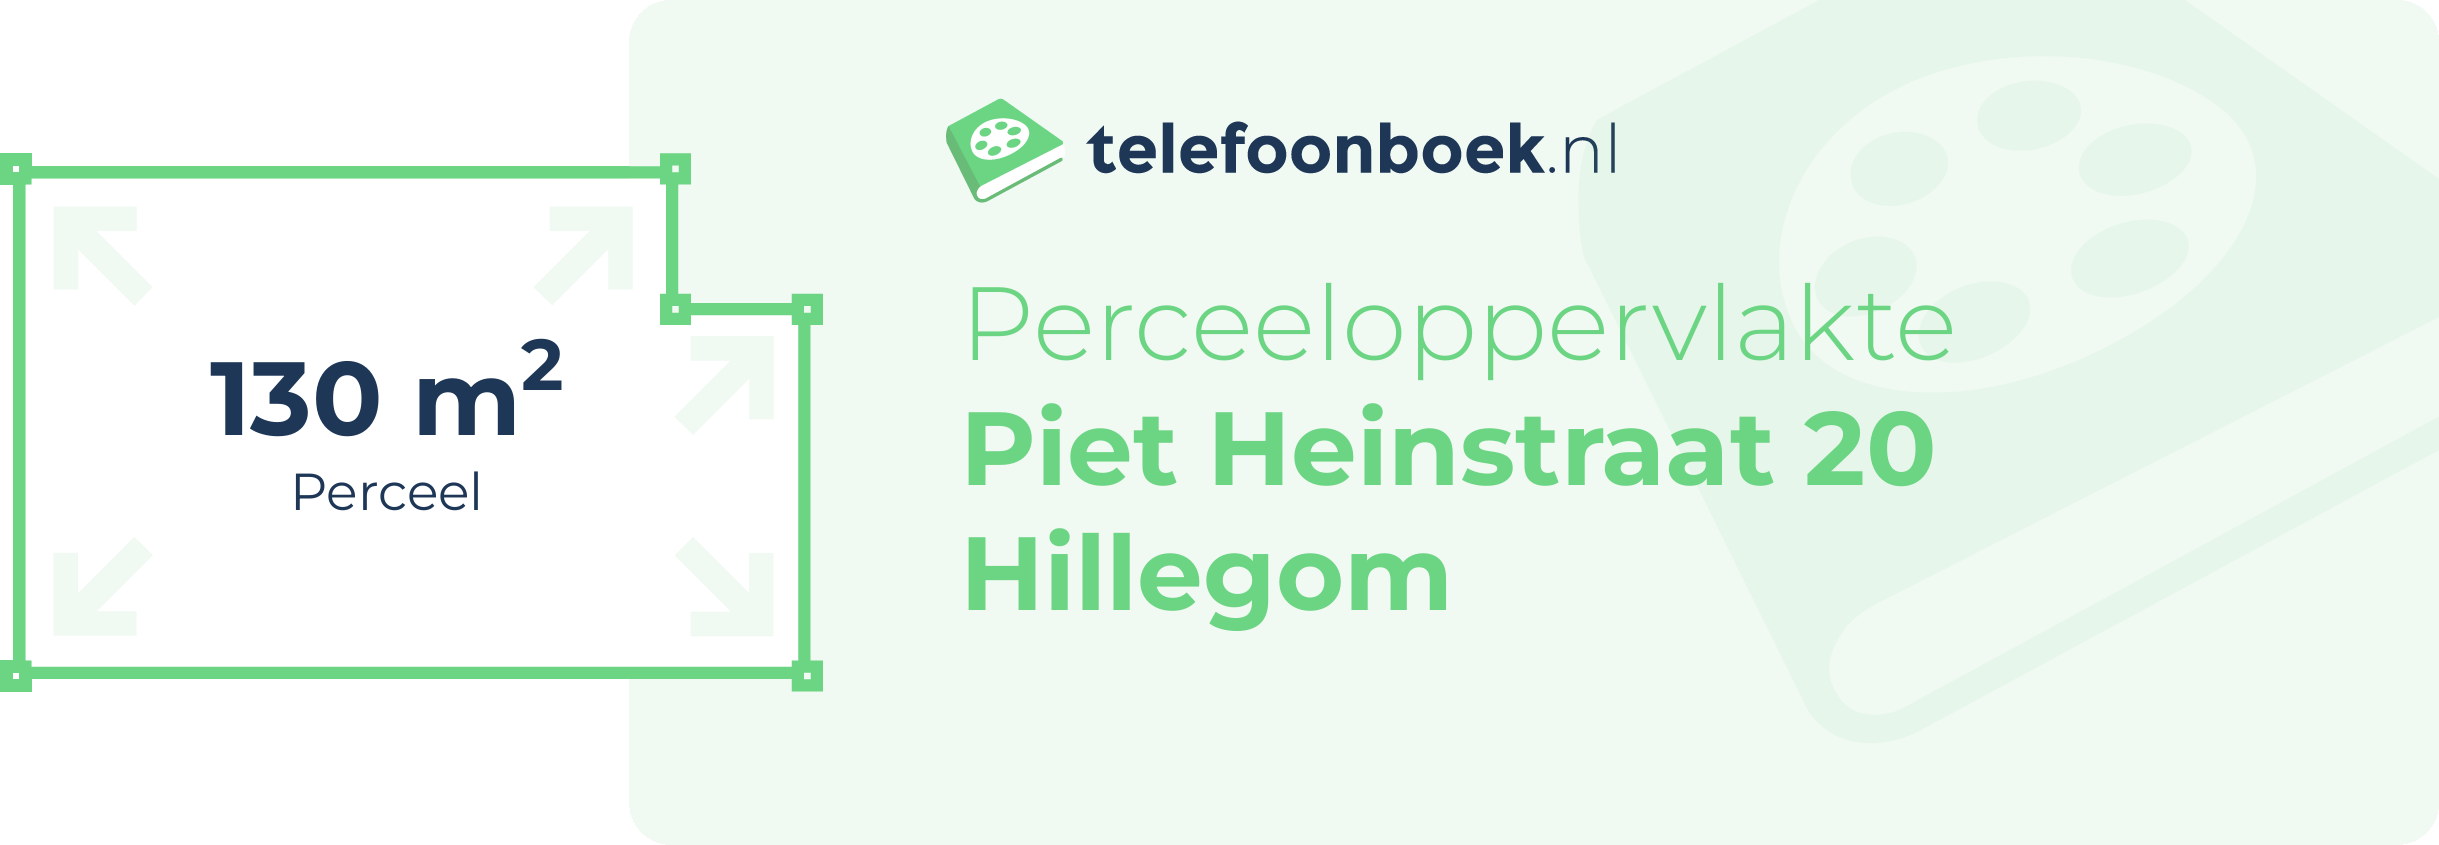 Perceeloppervlakte Piet Heinstraat 20 Hillegom